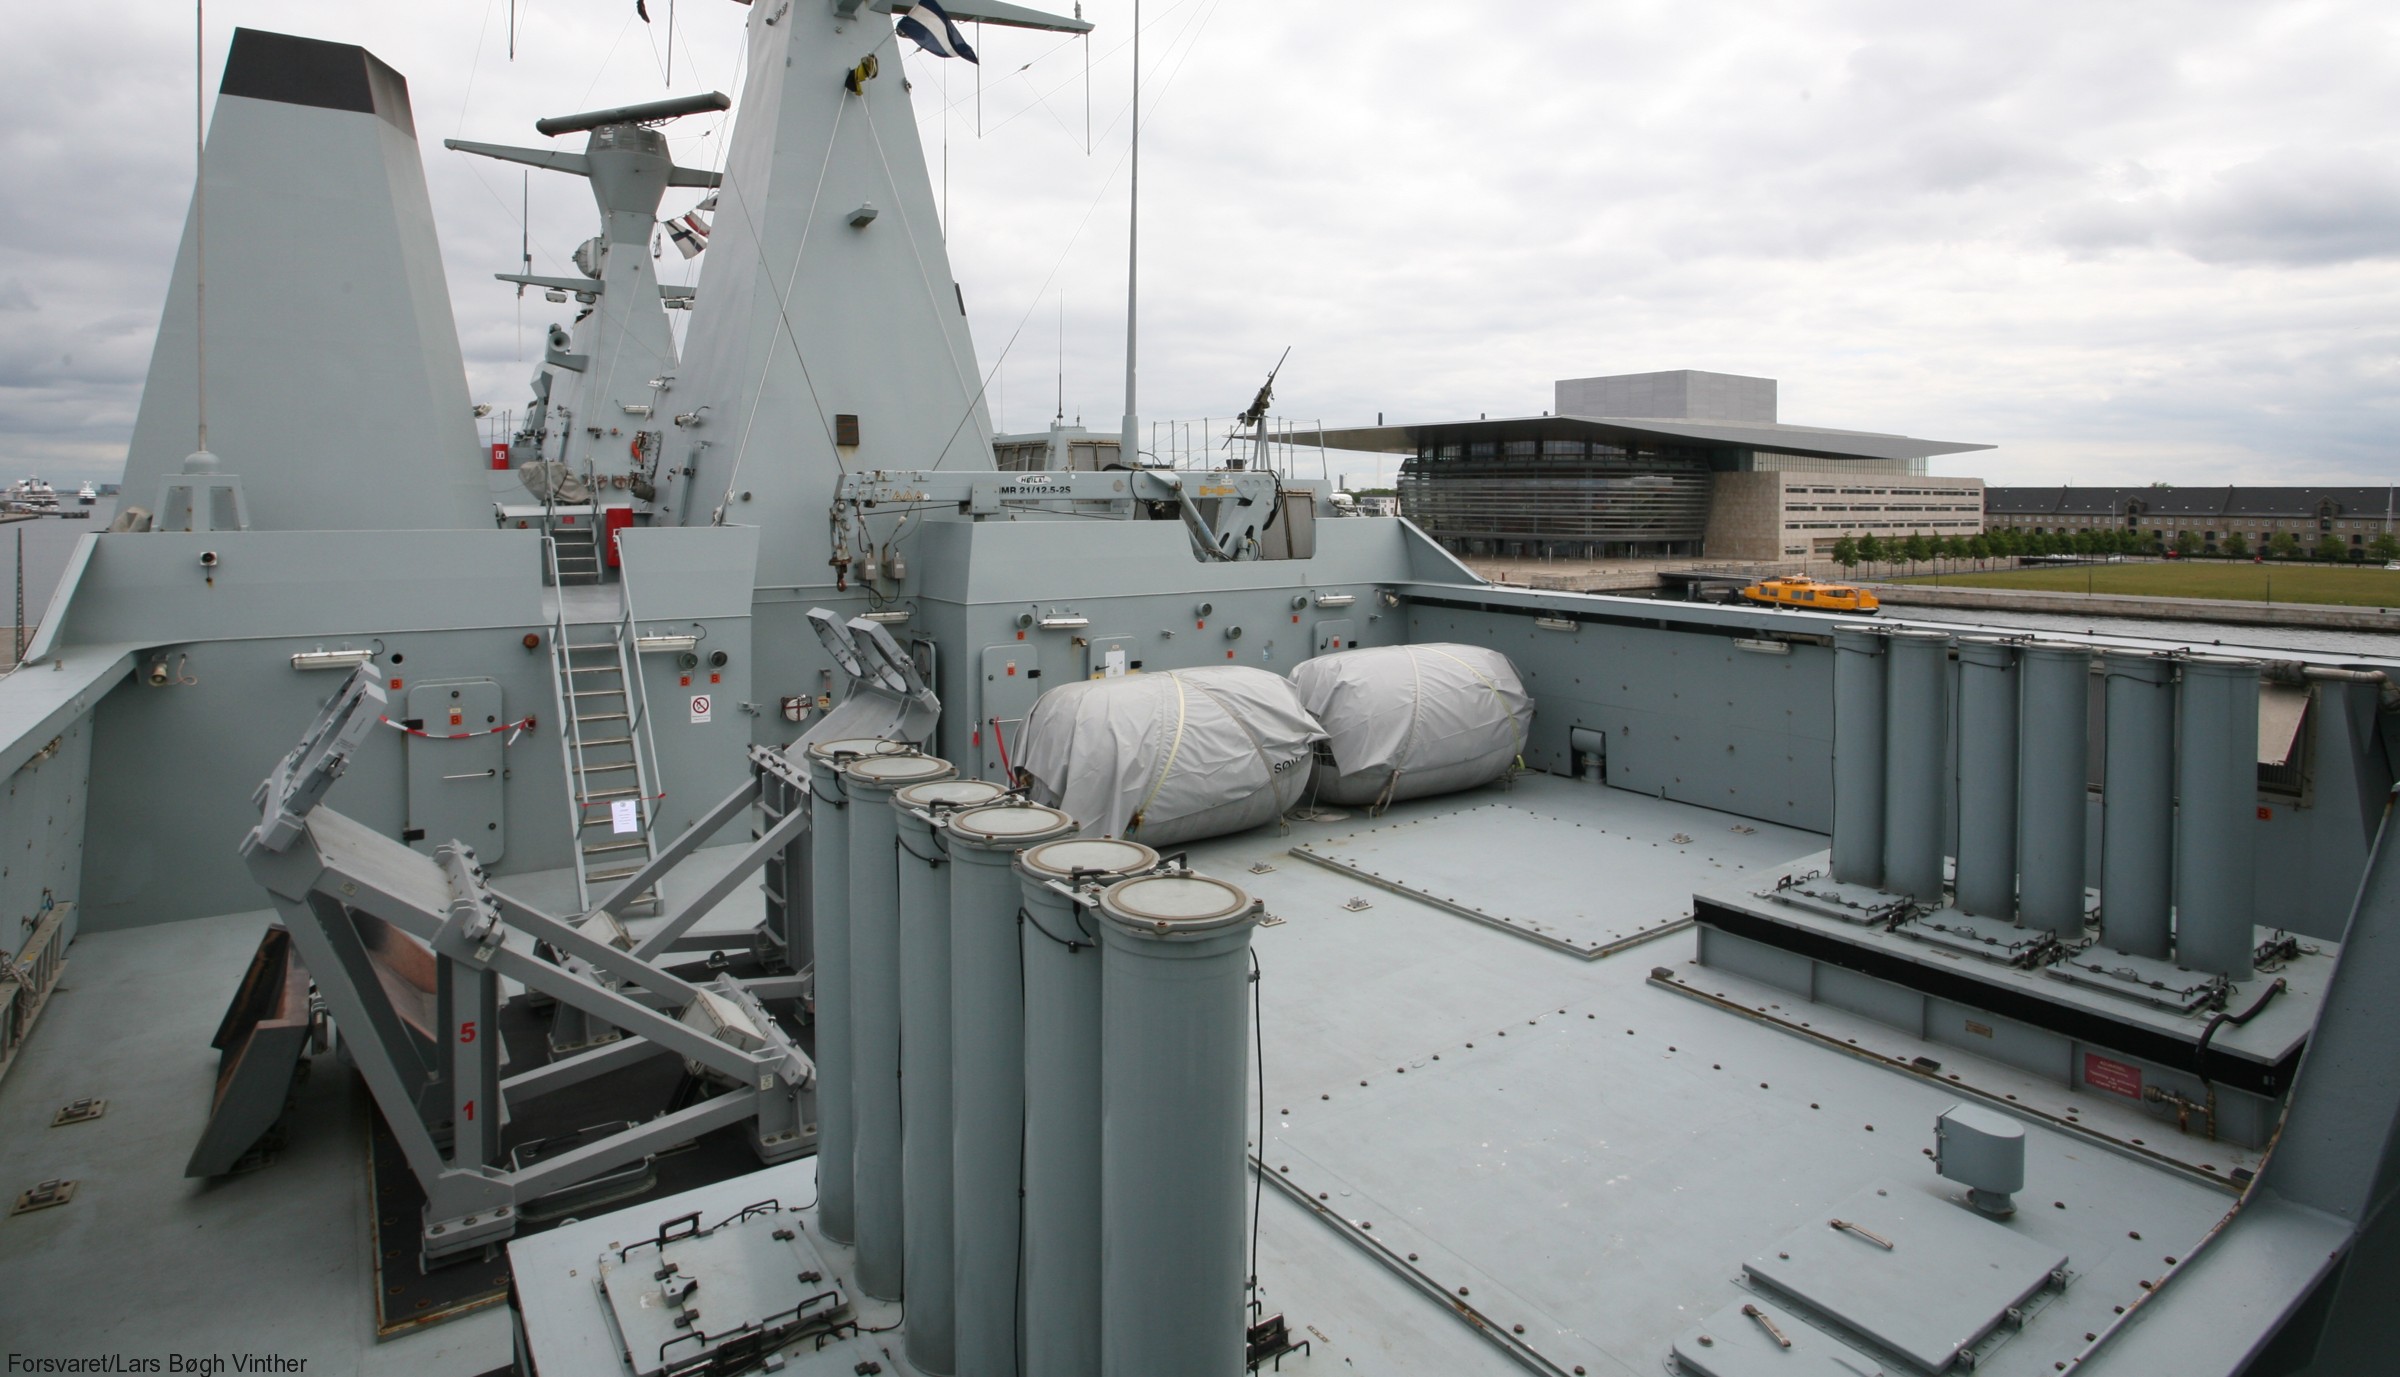 absalon class frigate command support ship royal danish navy 87x stanflex deck weapon arrangement